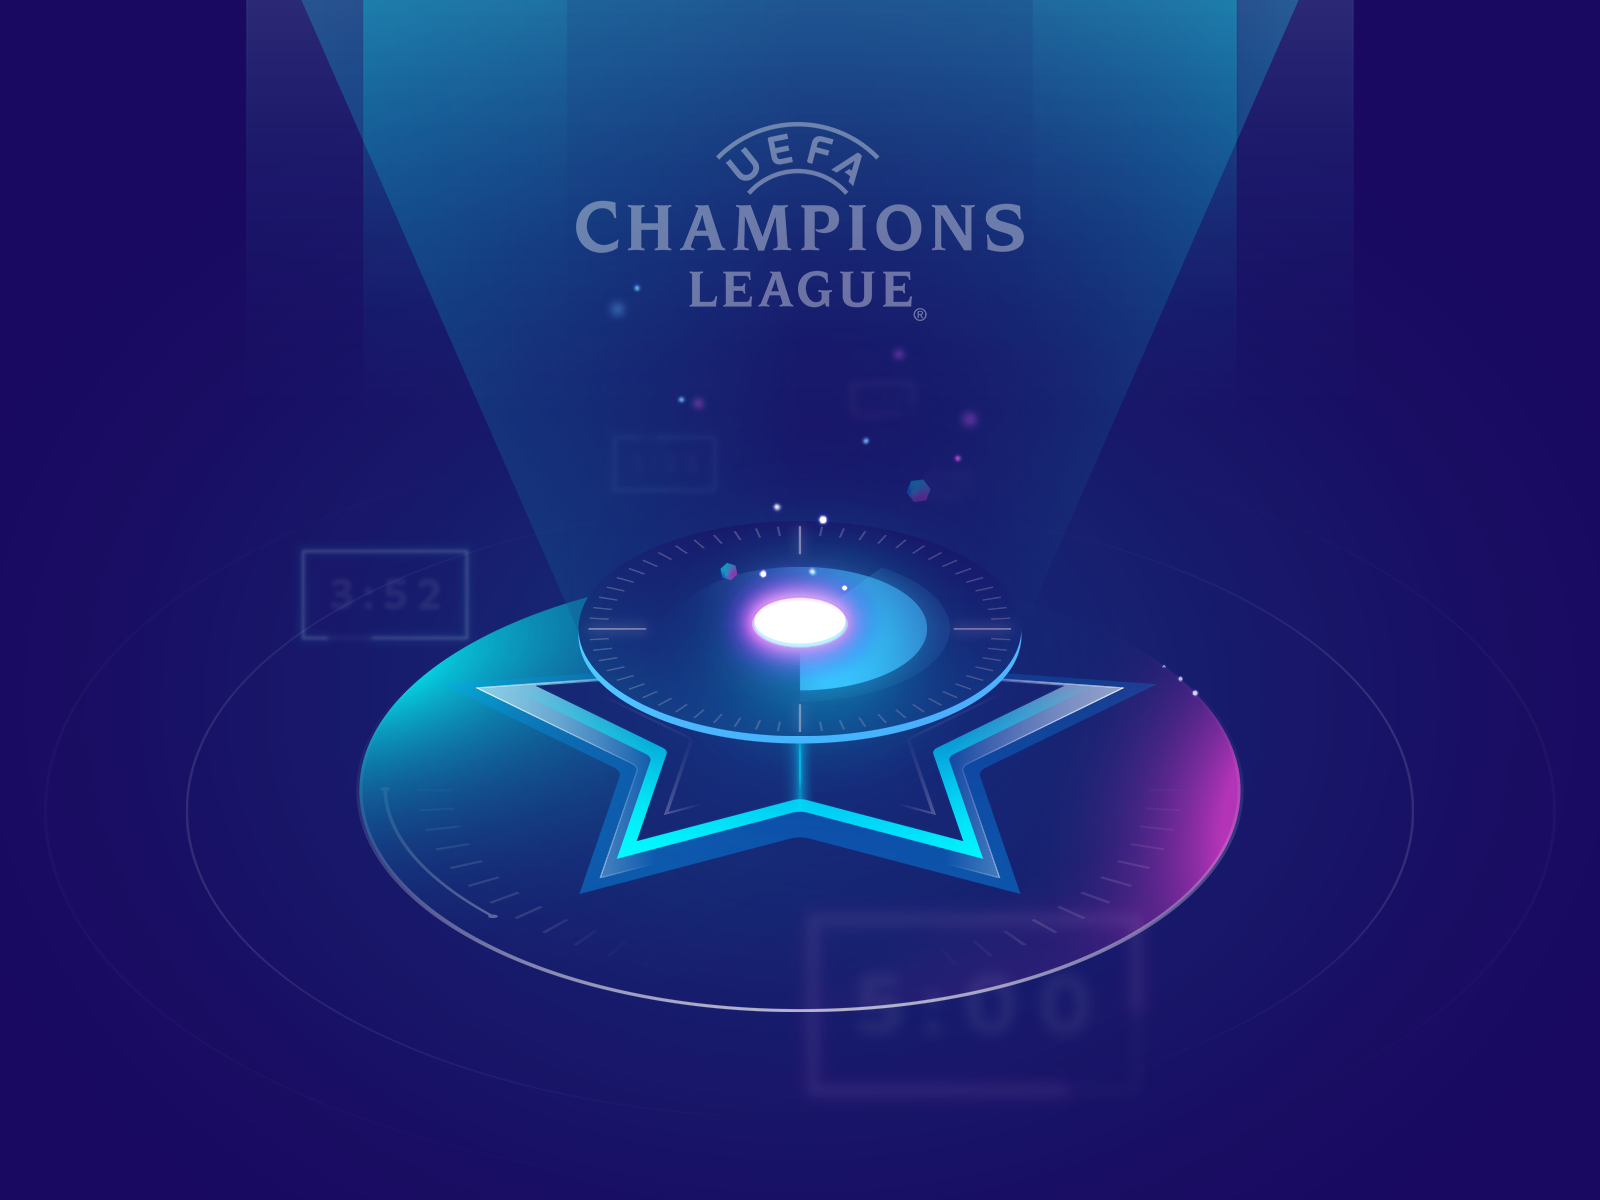 Illustration for Uefa Champions League jingle champions illustration league sky ucl uefa